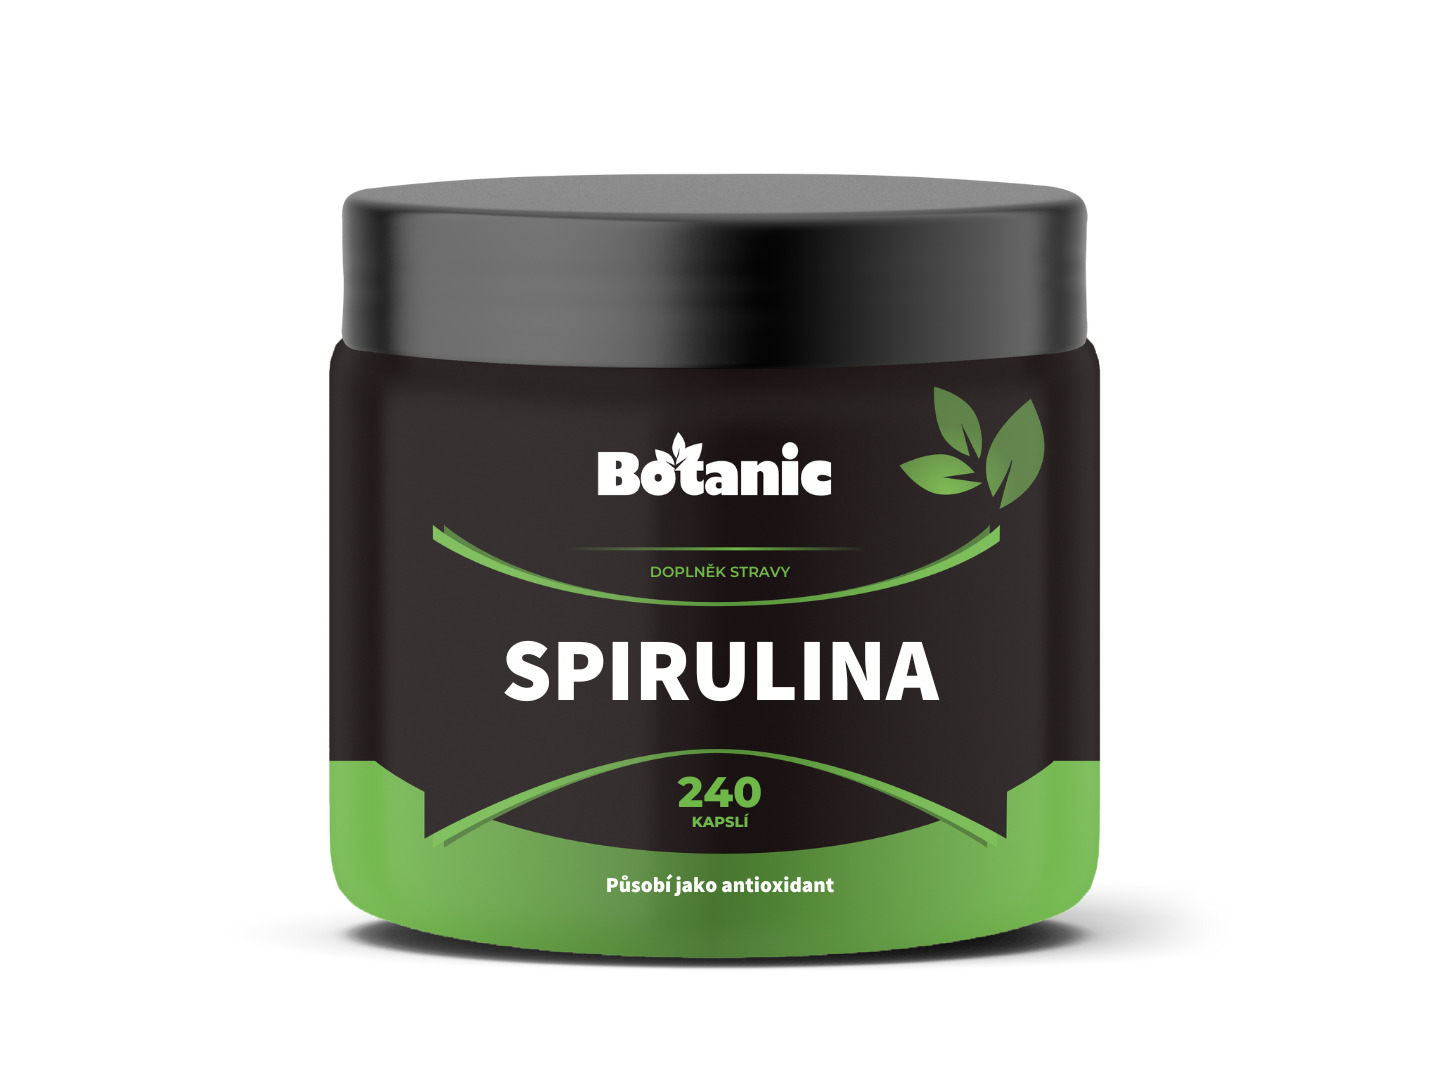 Spirulina - Prášek ze sinice v kapslích (Balení obsahuje: 240kap.)